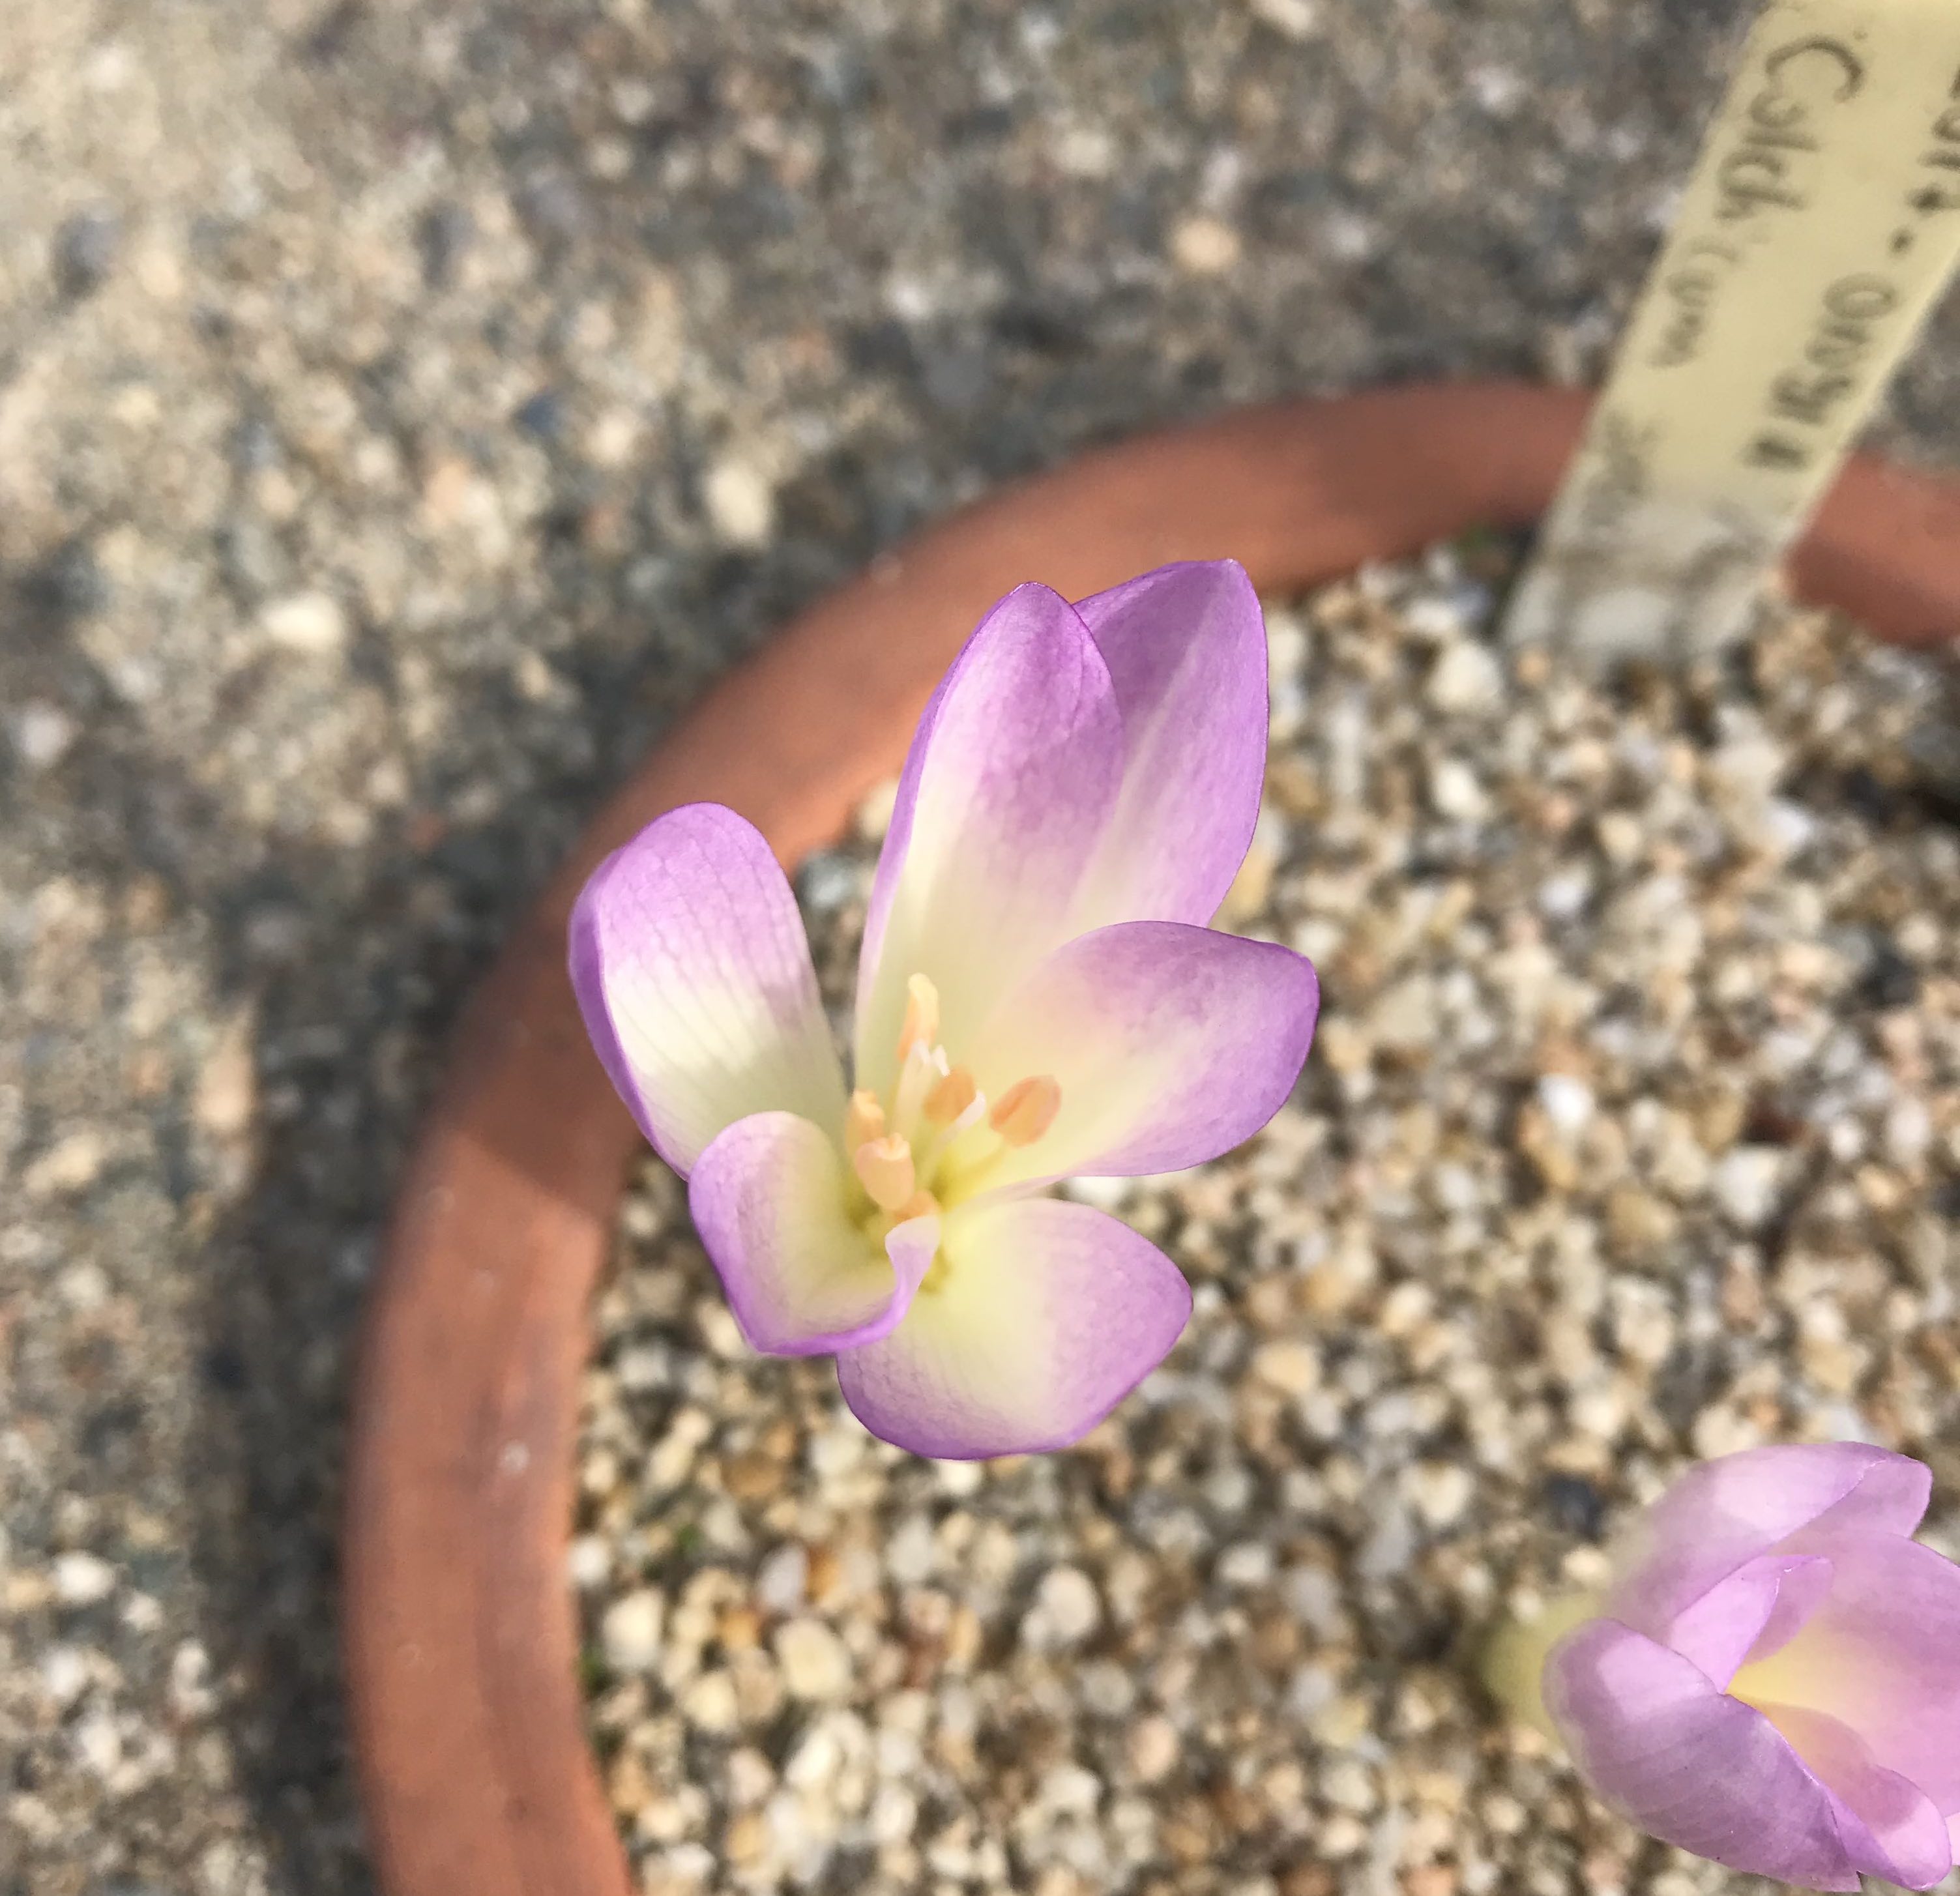 şepart - Colchicum speciosum